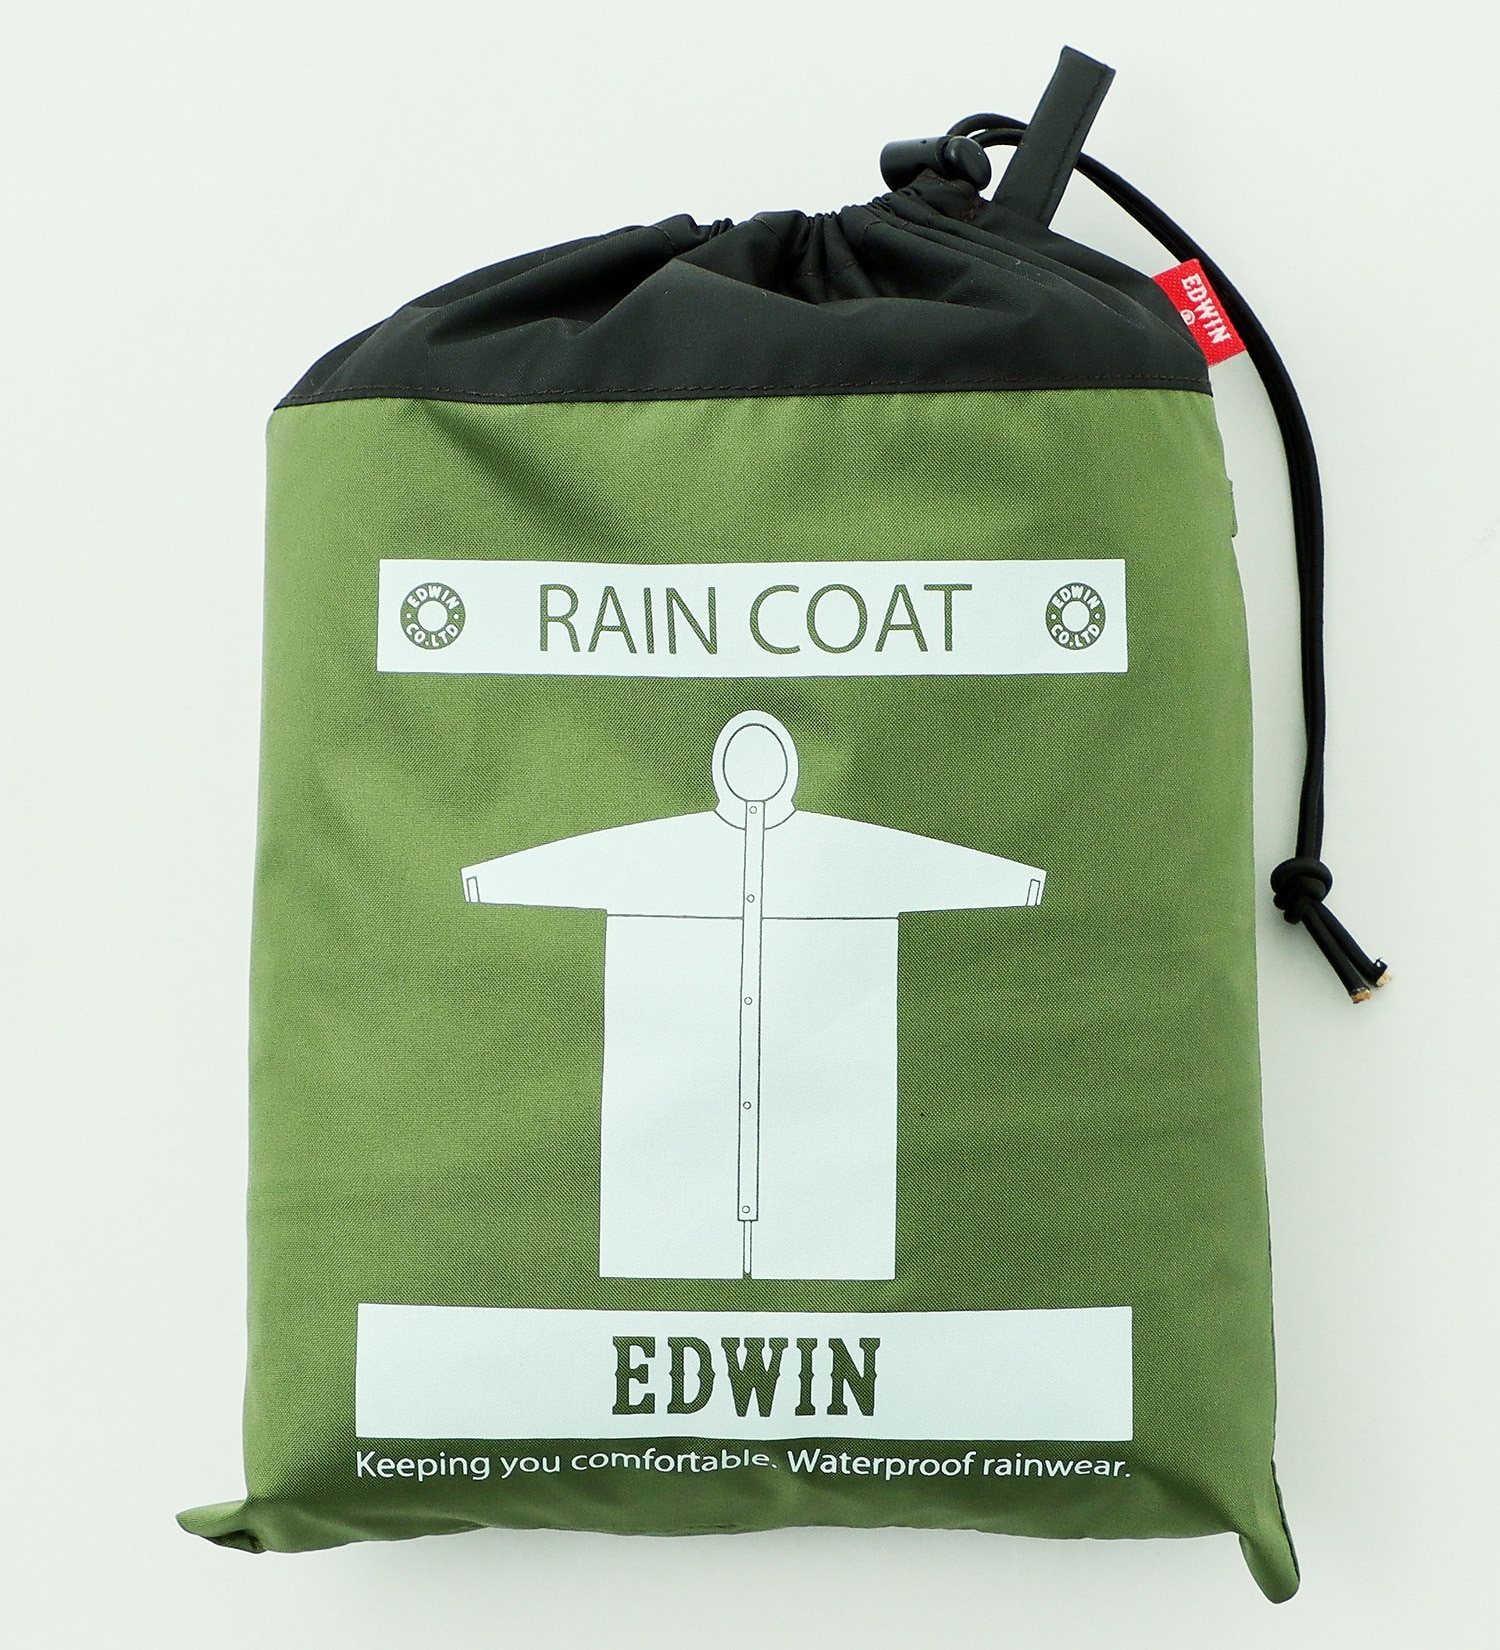 EDWIN(エドウイン)のEDWIN レインロングコート|ファッション雑貨/レインウェア/ポンチョ/メンズ|カーキ